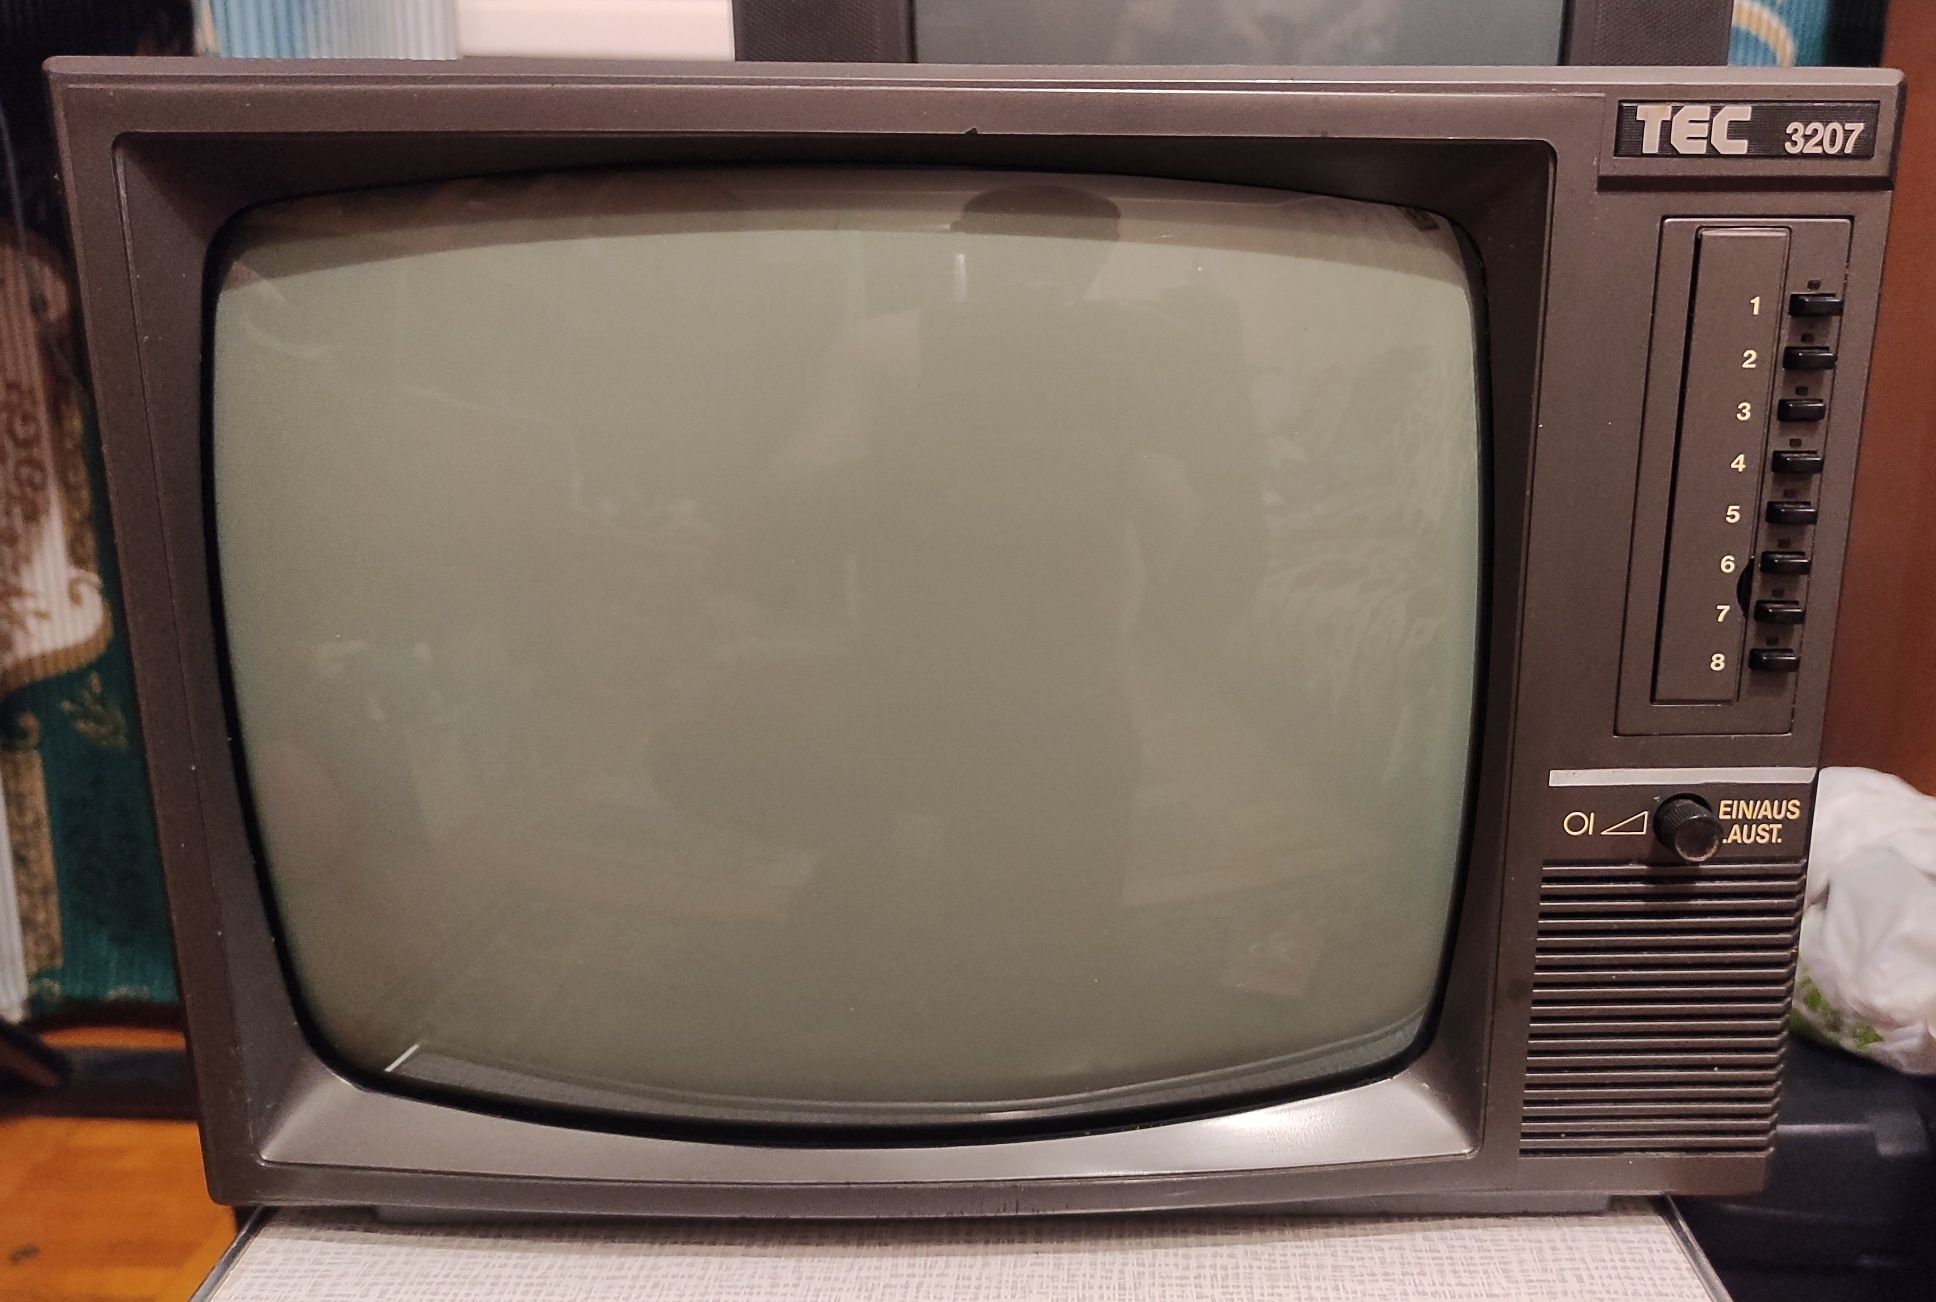 Маленький телевизор TEC 3207 (Черно-белый)